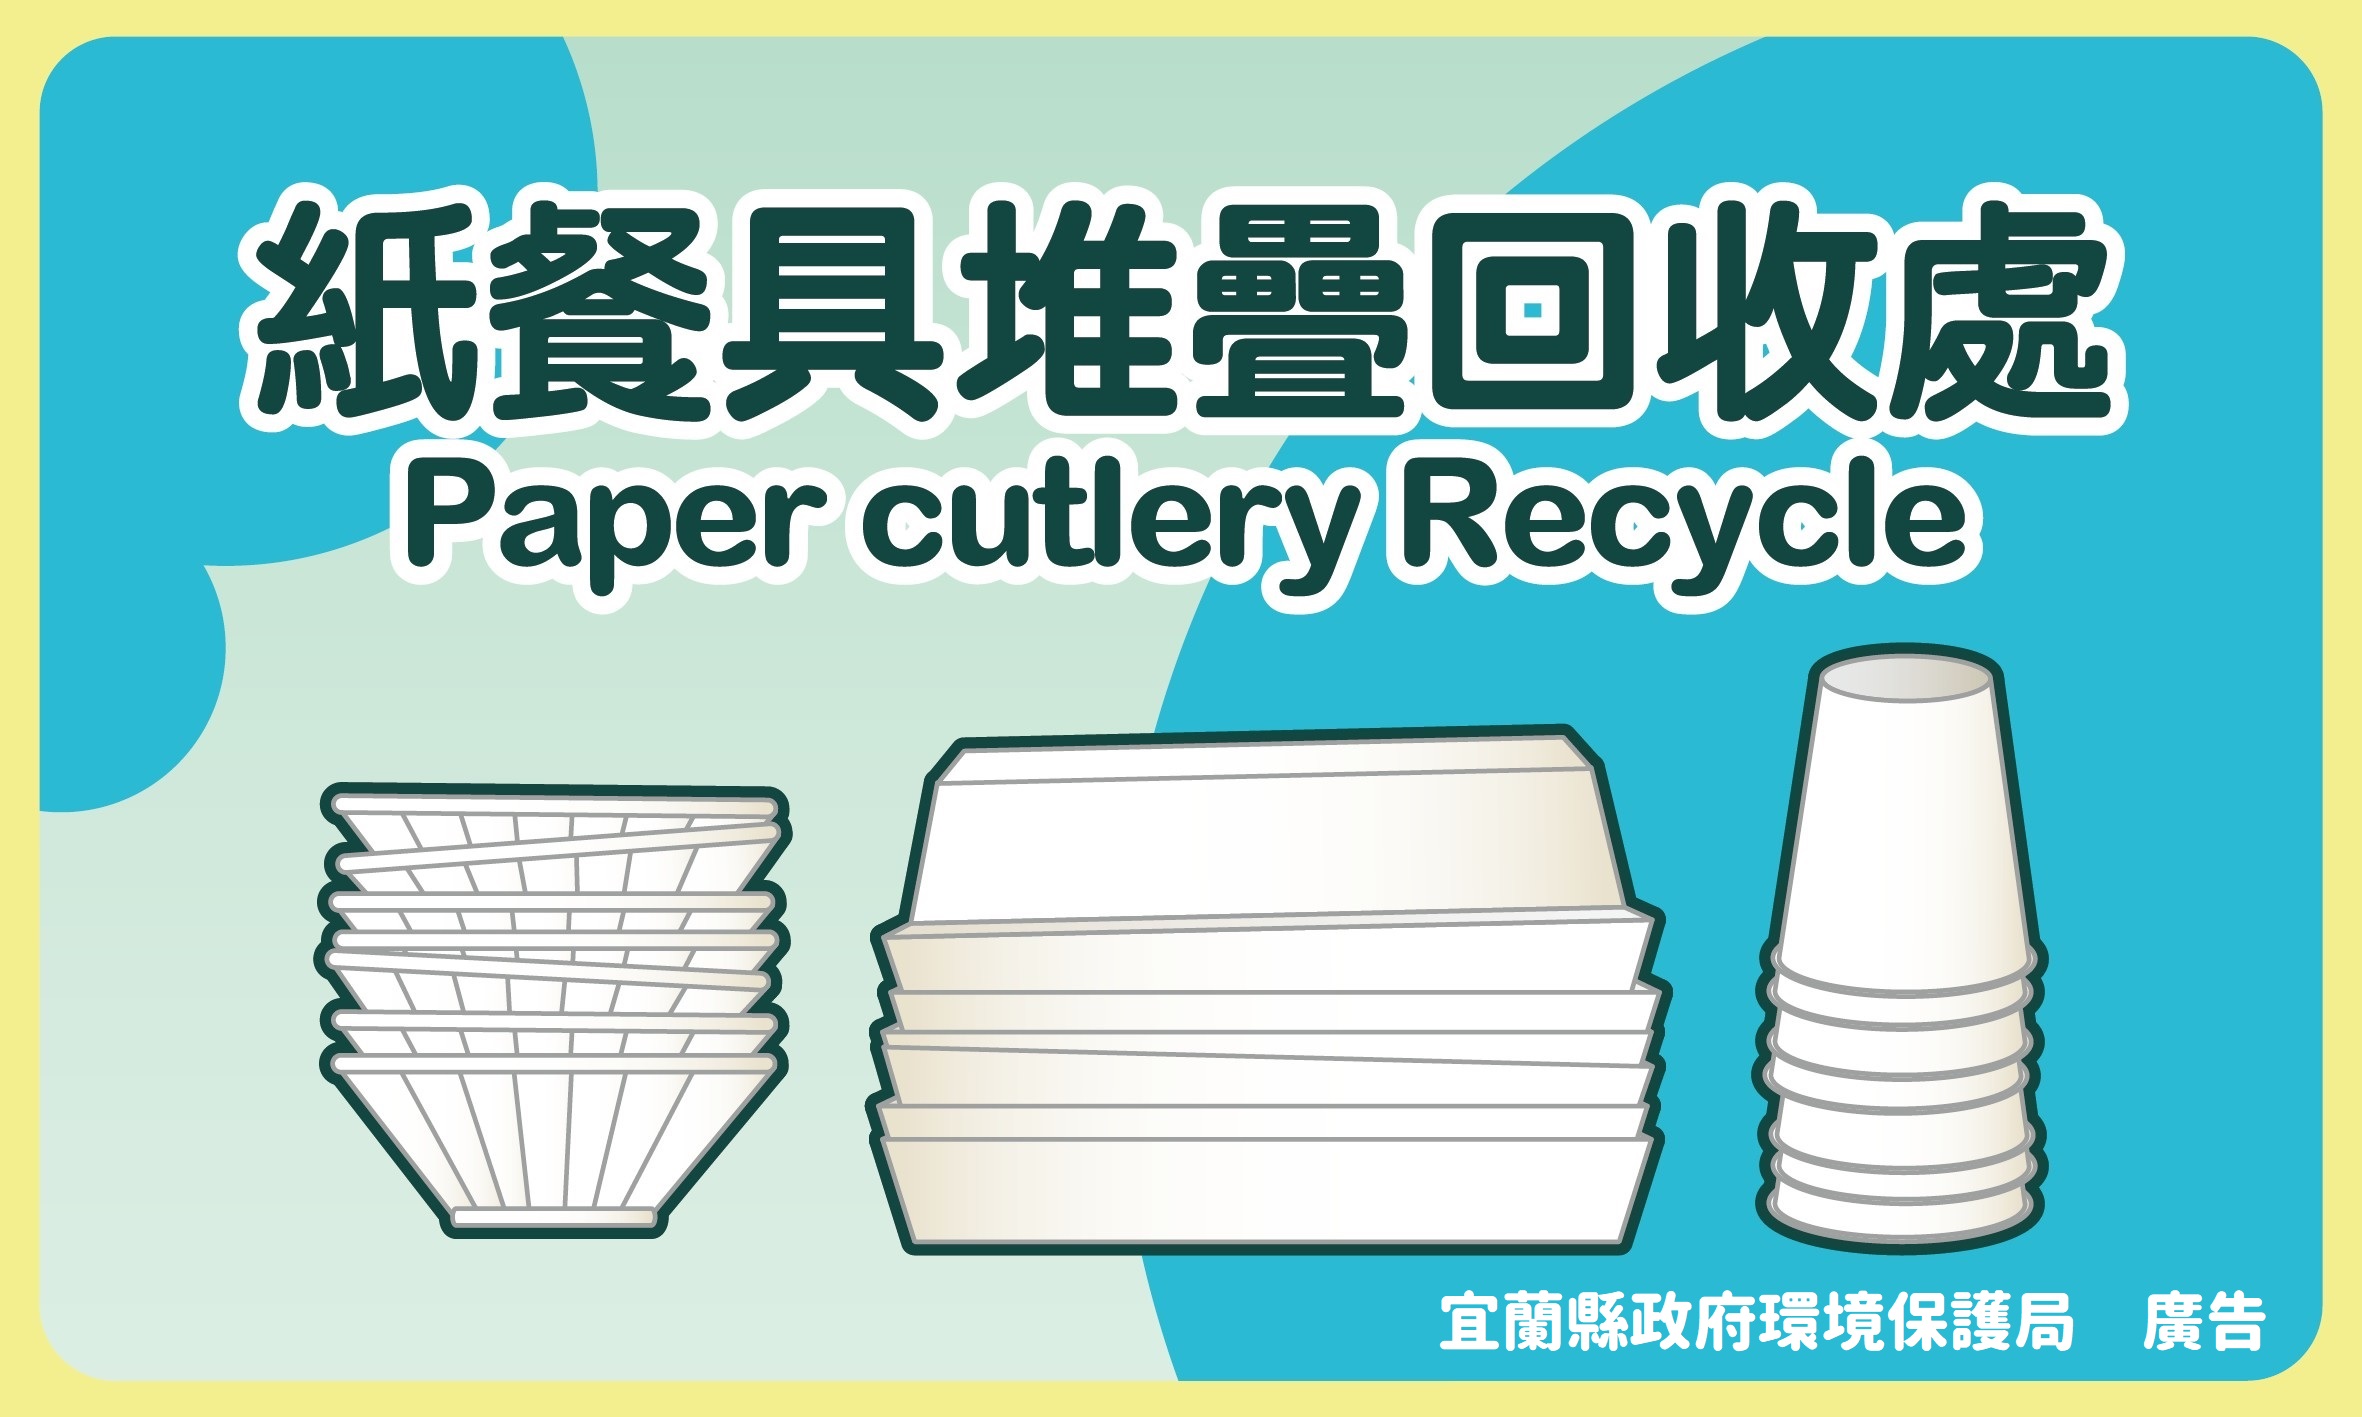 回收標示:紙餐具堆疊回收處